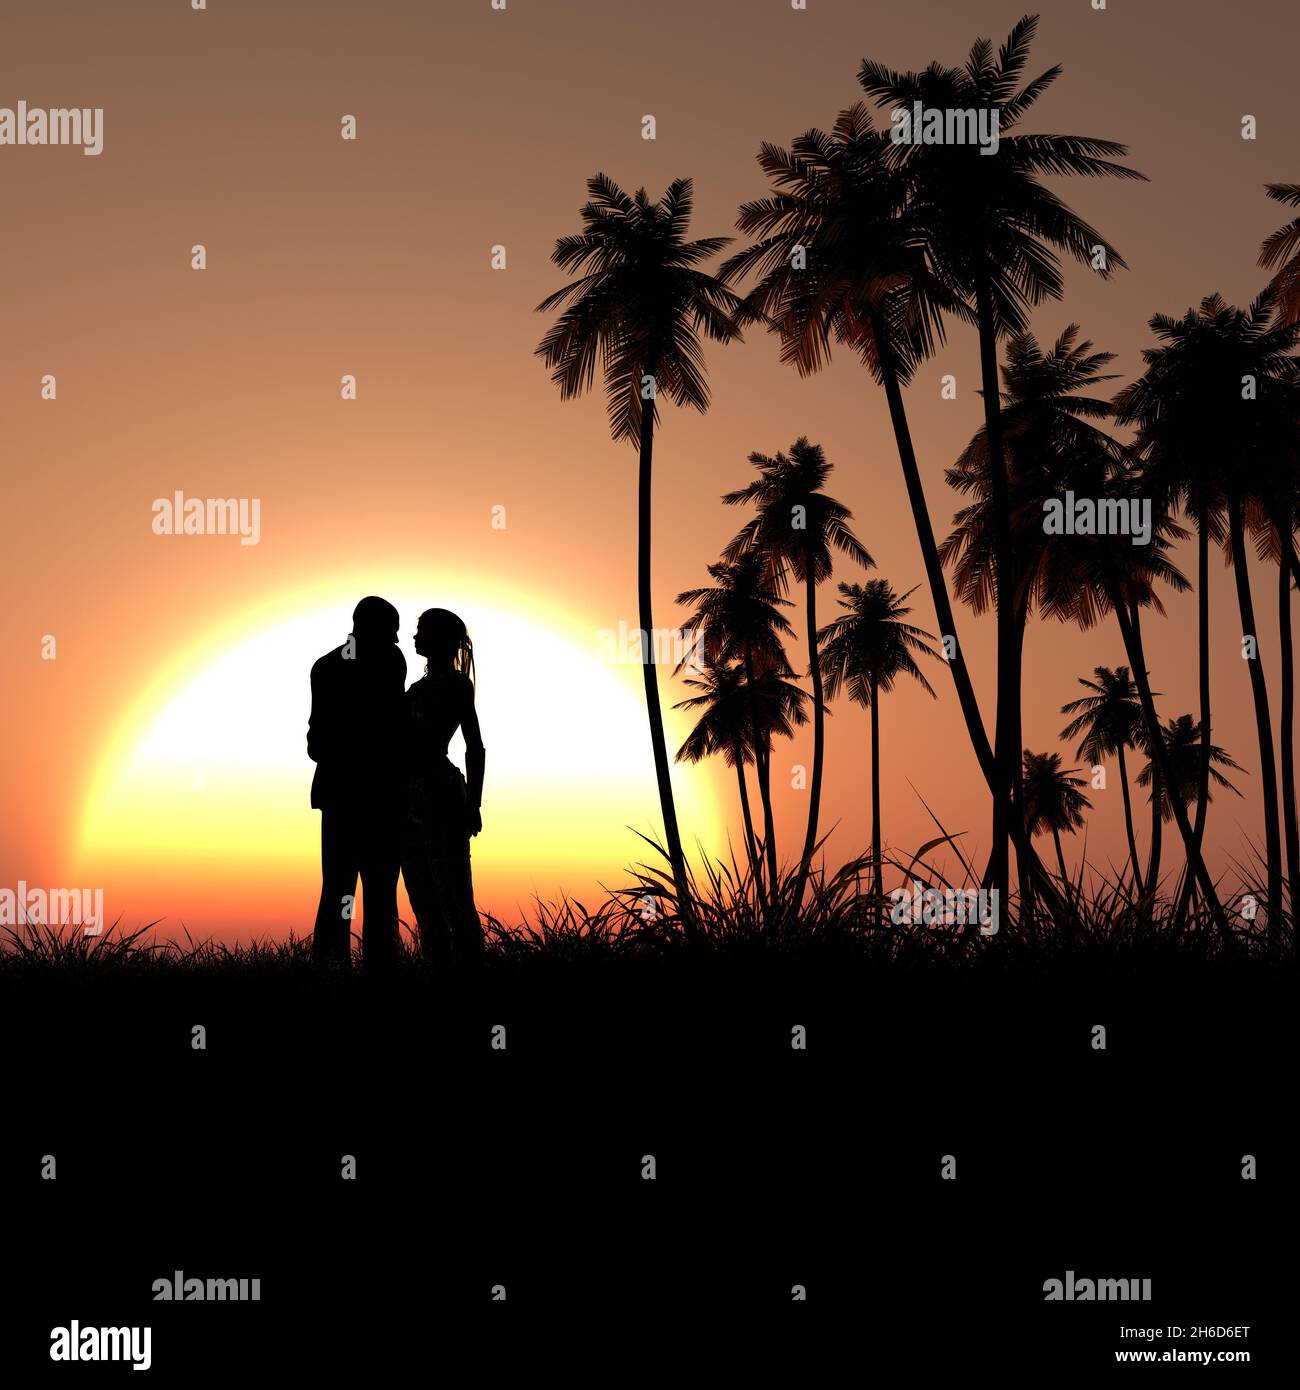 Illustration d'une silhouette de palmiers et d'un couple pendant la véranda Banque D'Images